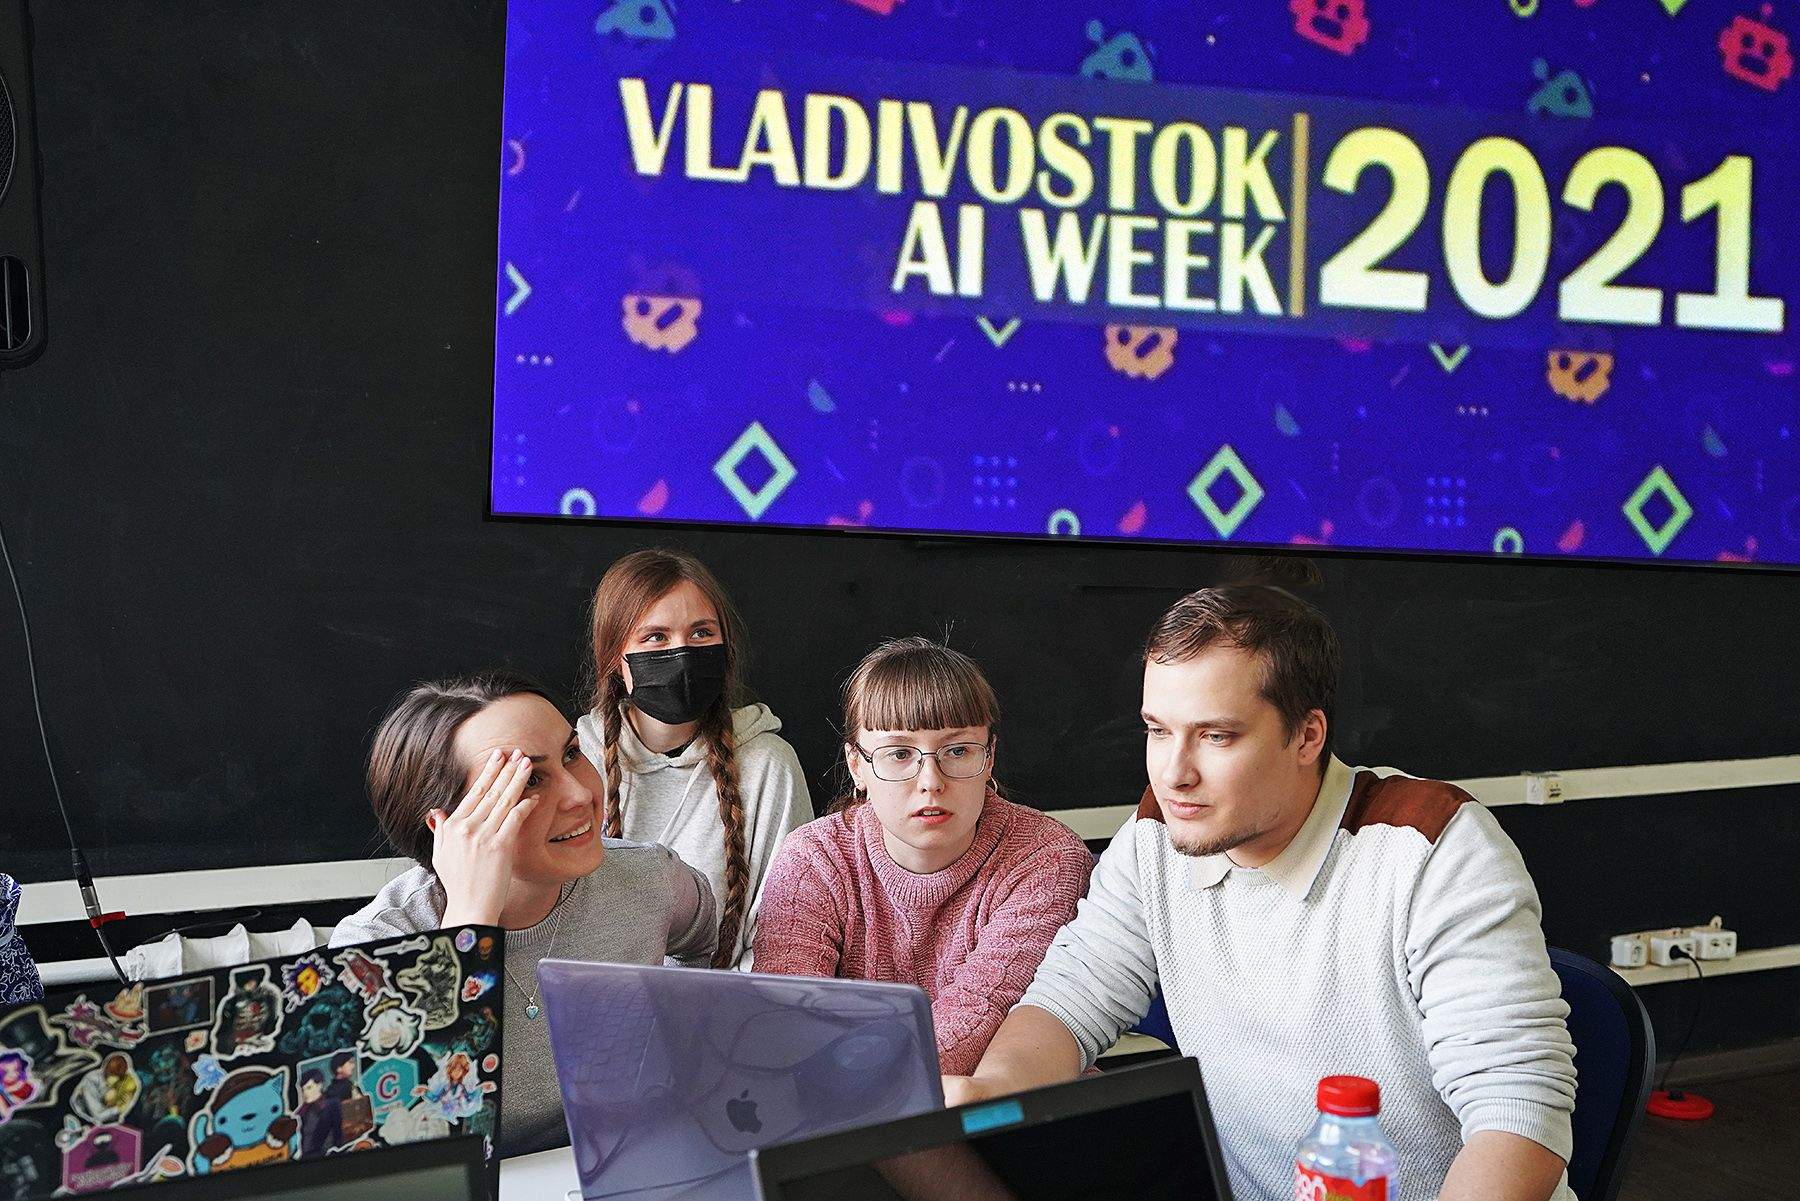 Неделя искусственного интеллекта Vladivostok AI Week 2021 во ВГУЭС